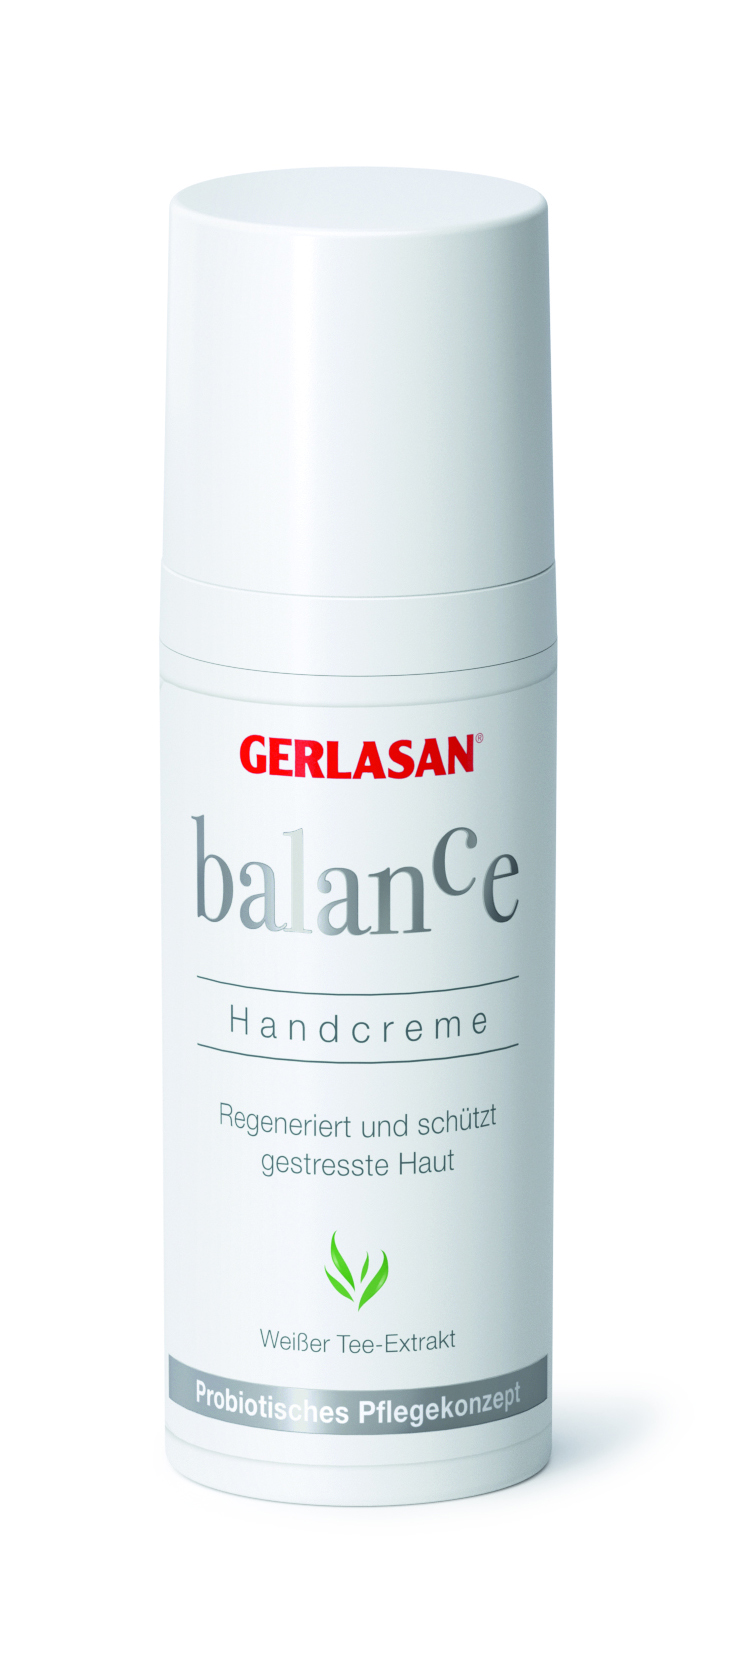 GERLASAN balance Handcreme, 50 ml Spender